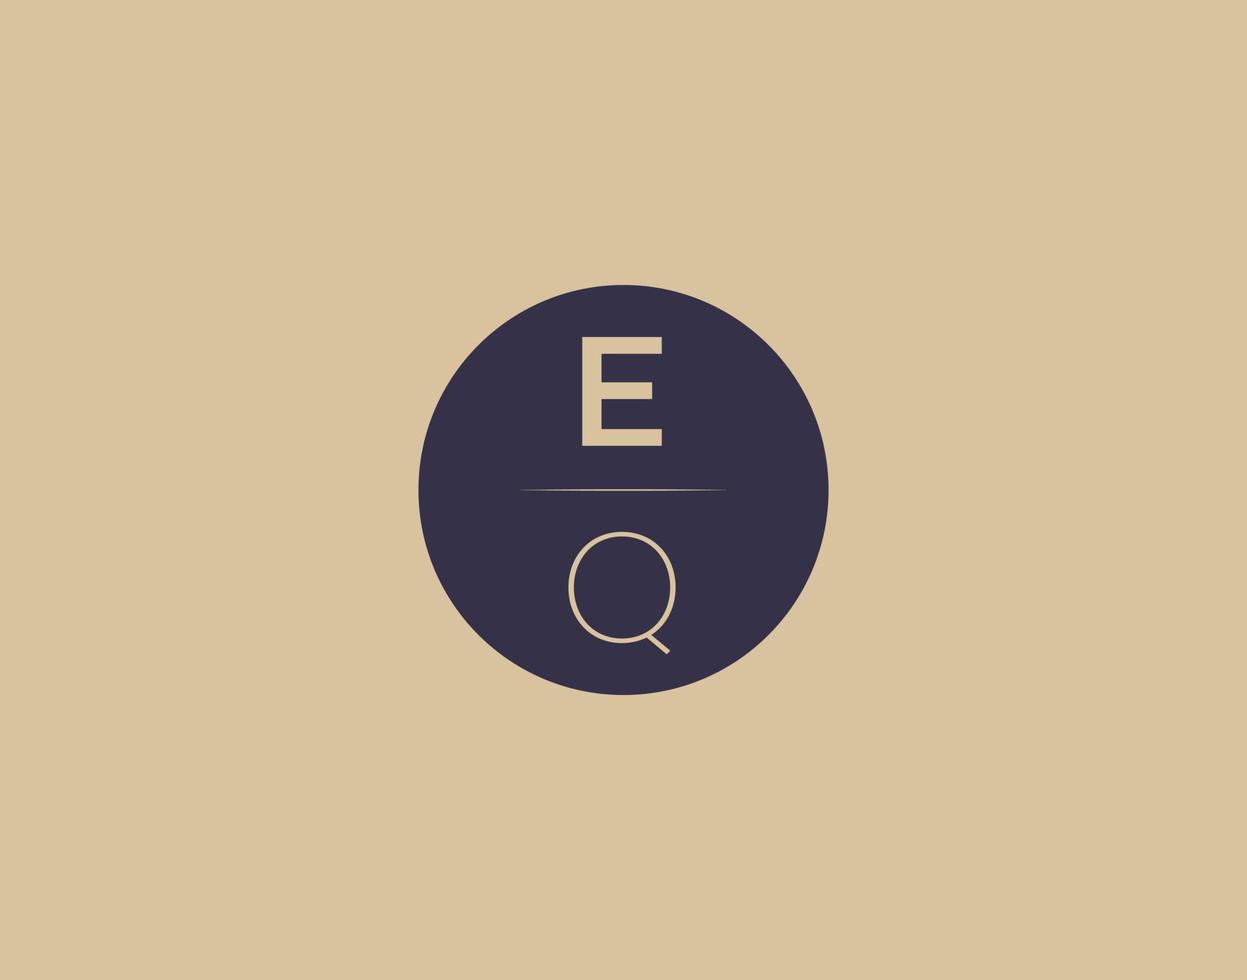 EQ letter modern elegant logo design vector images